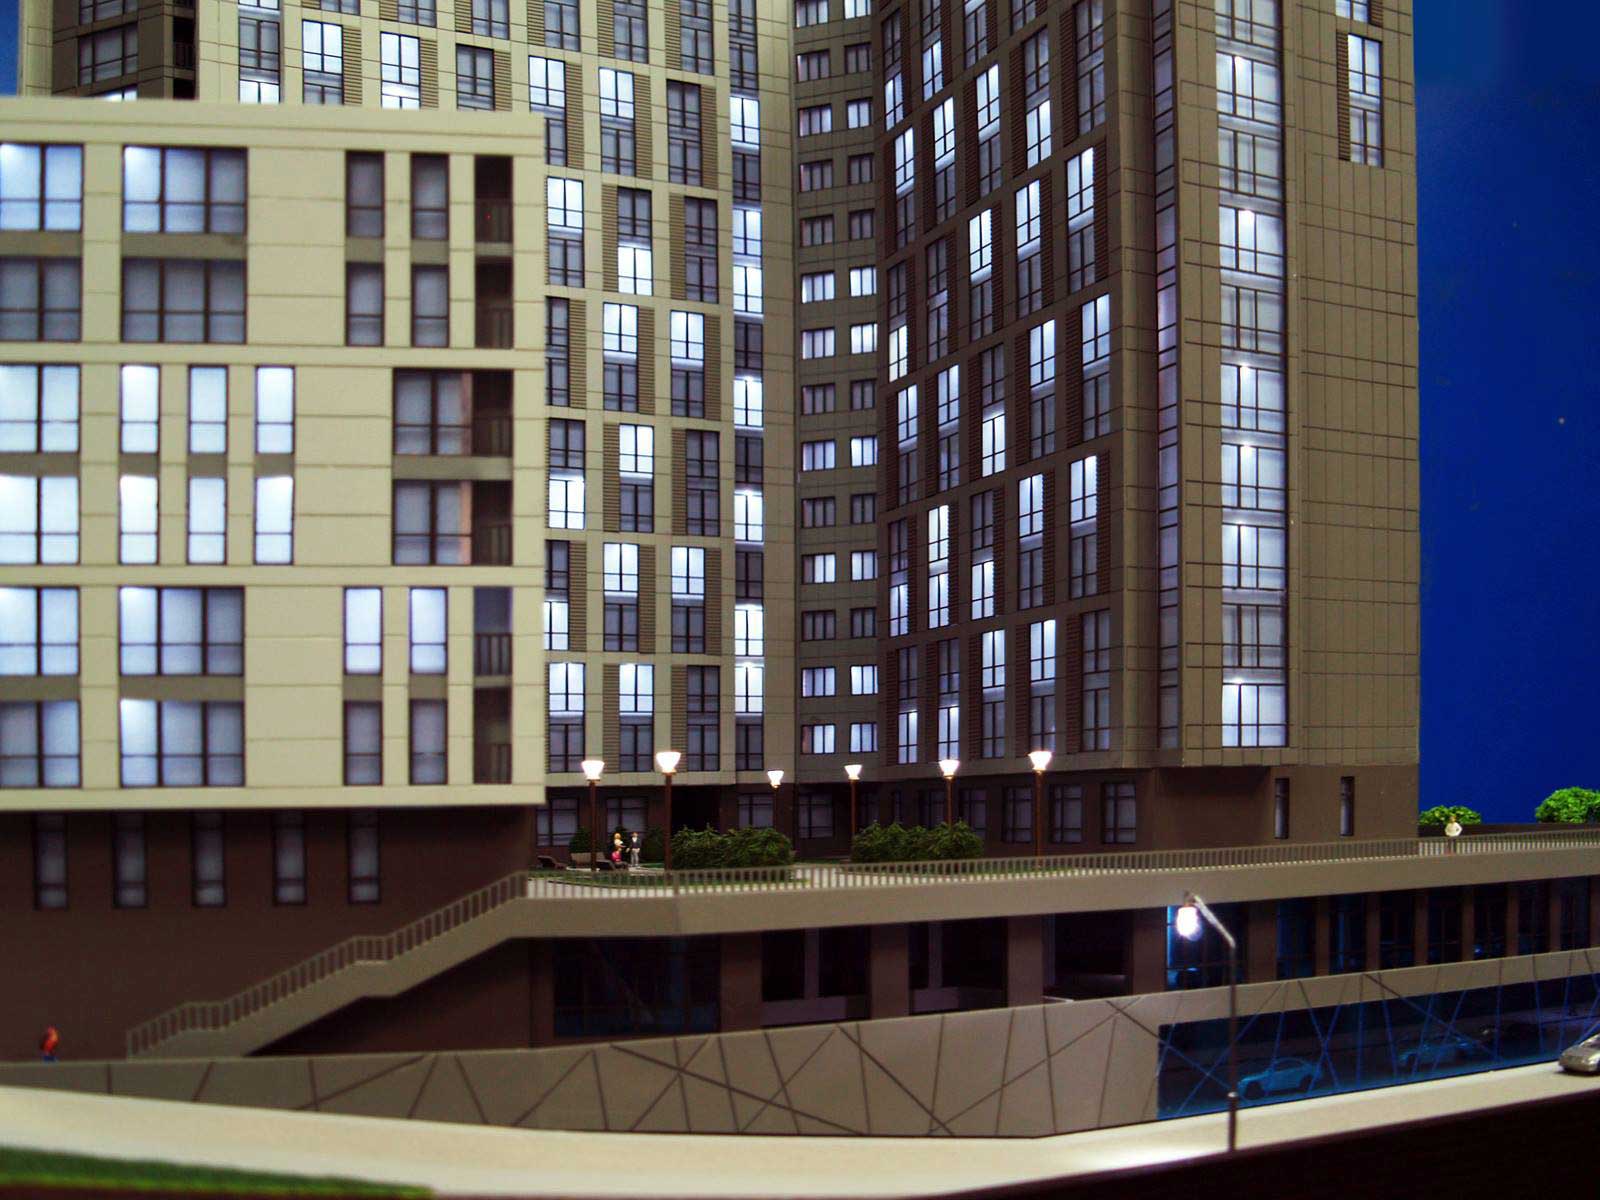 Модель жилого-офисного здания. В г. Киеве. Печерск. Масштаб М 1:100.